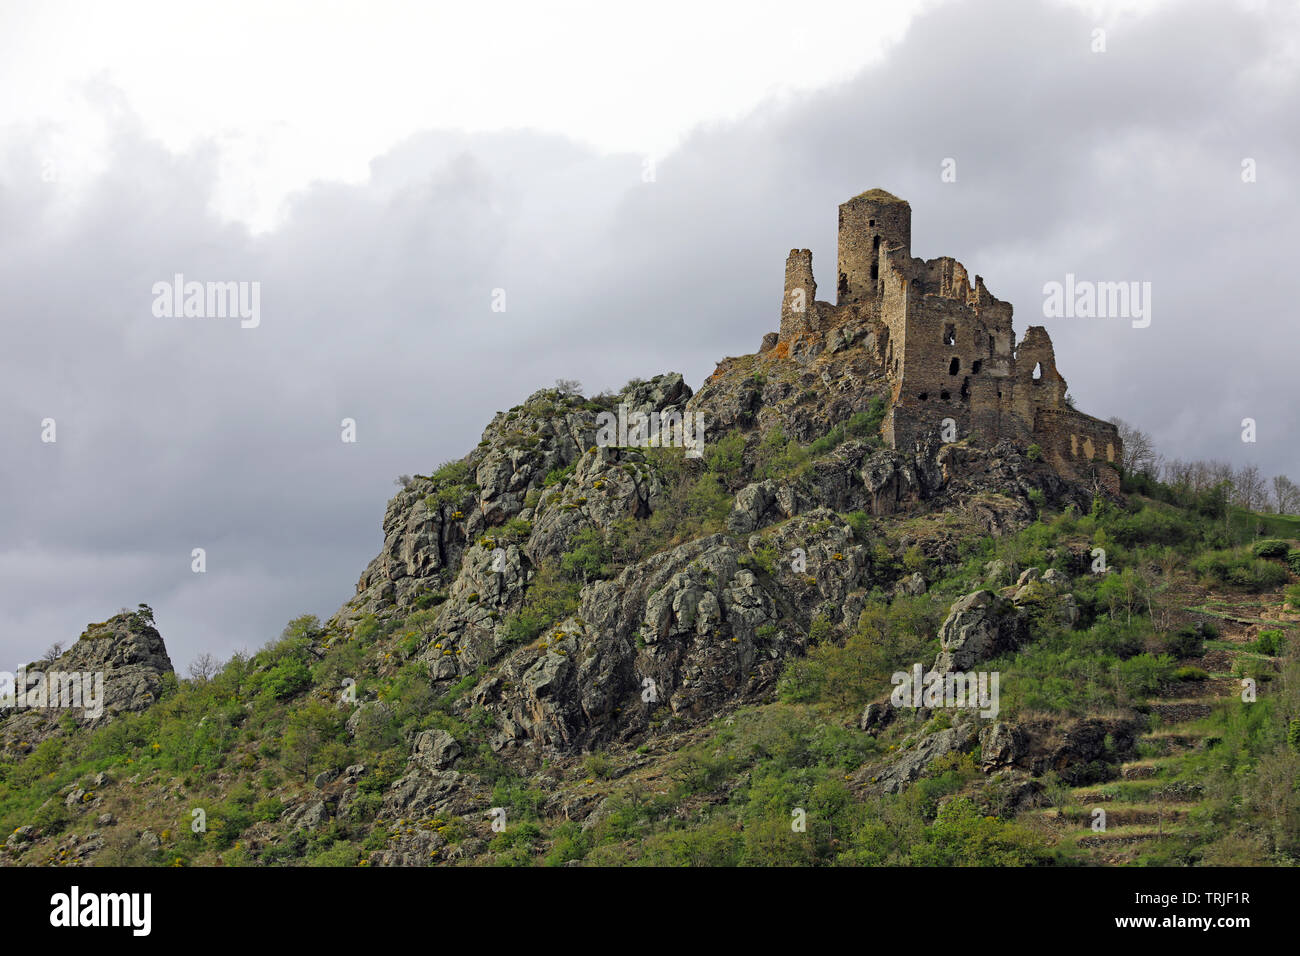 Die Ruinen der mittelalterlichen Burg namens "Chateau de leotoing". Puy-de-Dome, Auvergne, Frankreich Stockfoto